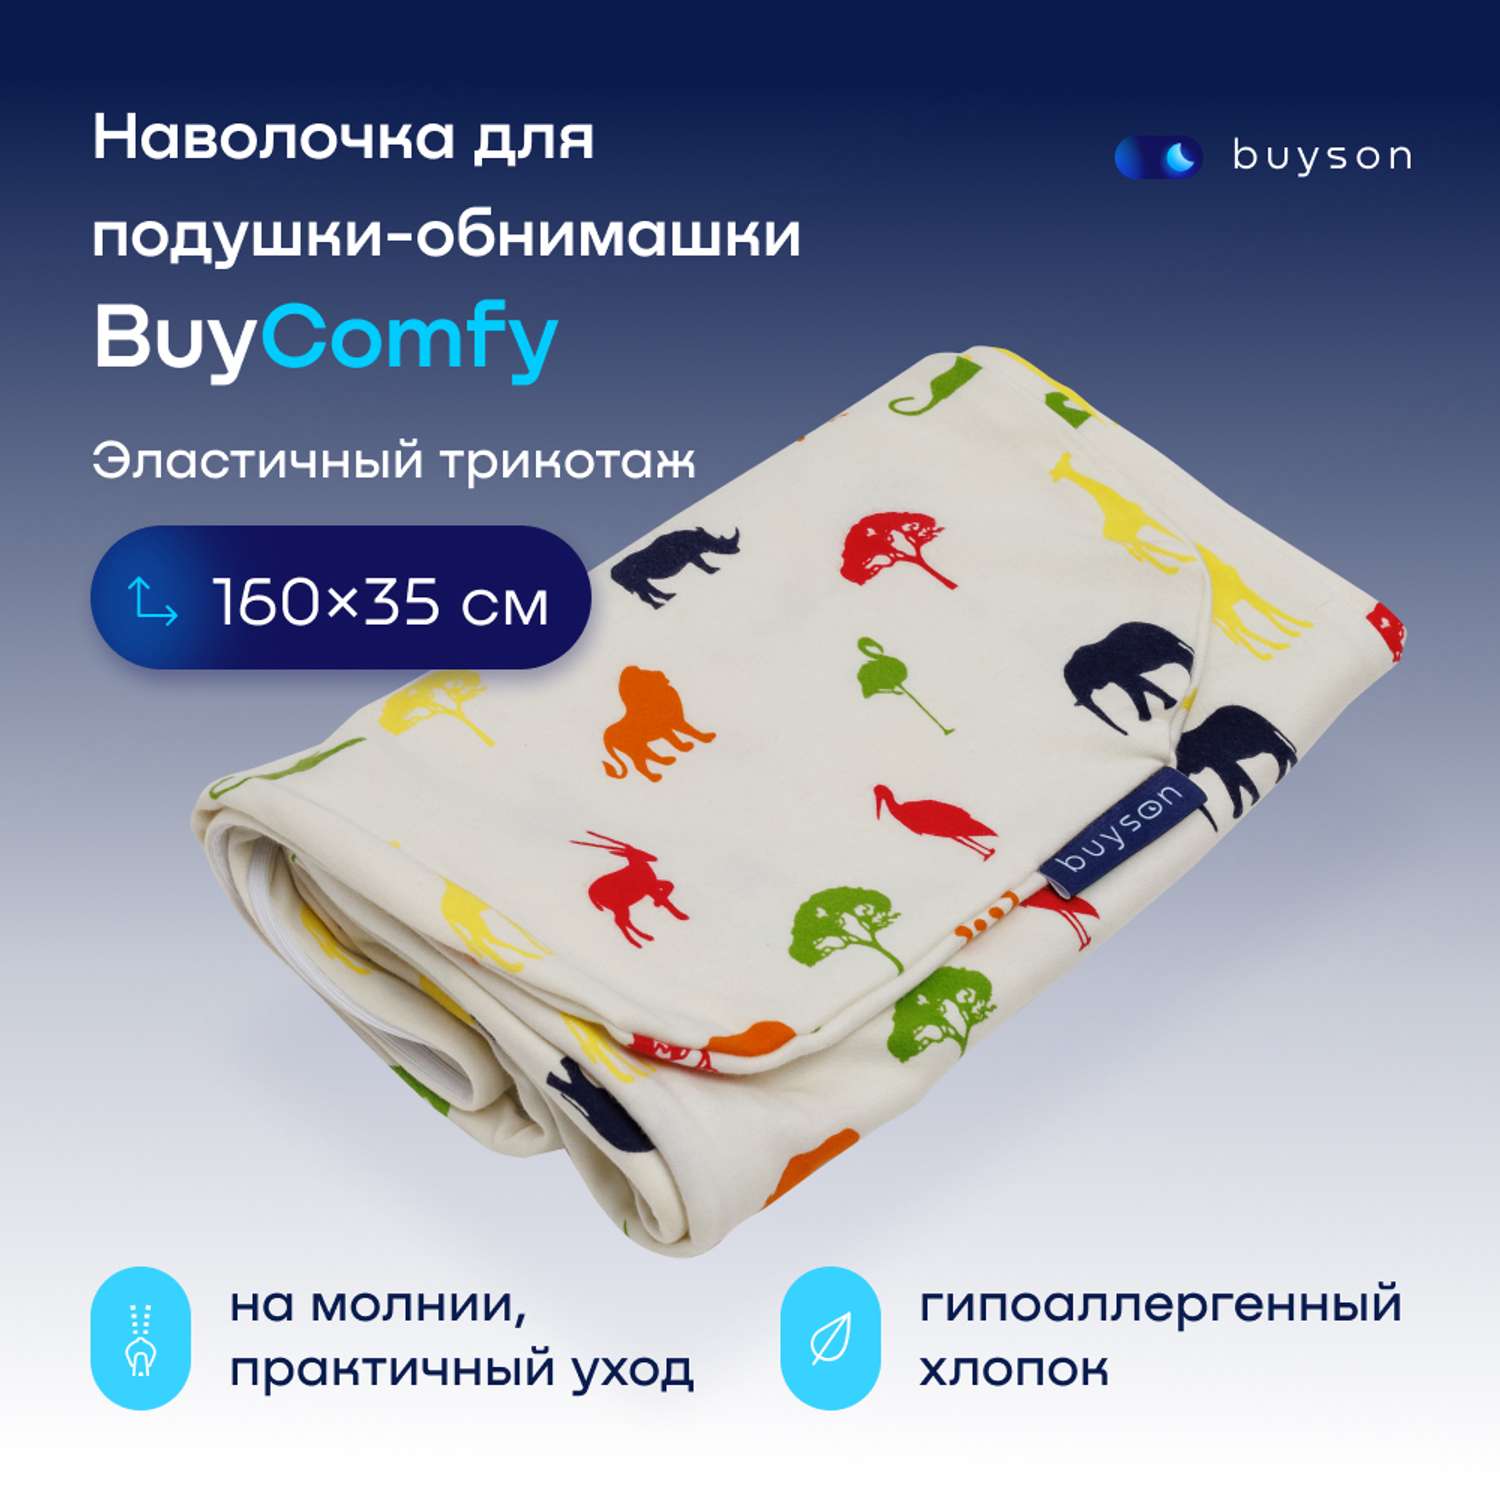 Чехол на подушку-обнимашку buyson BuyComfy - фото 1